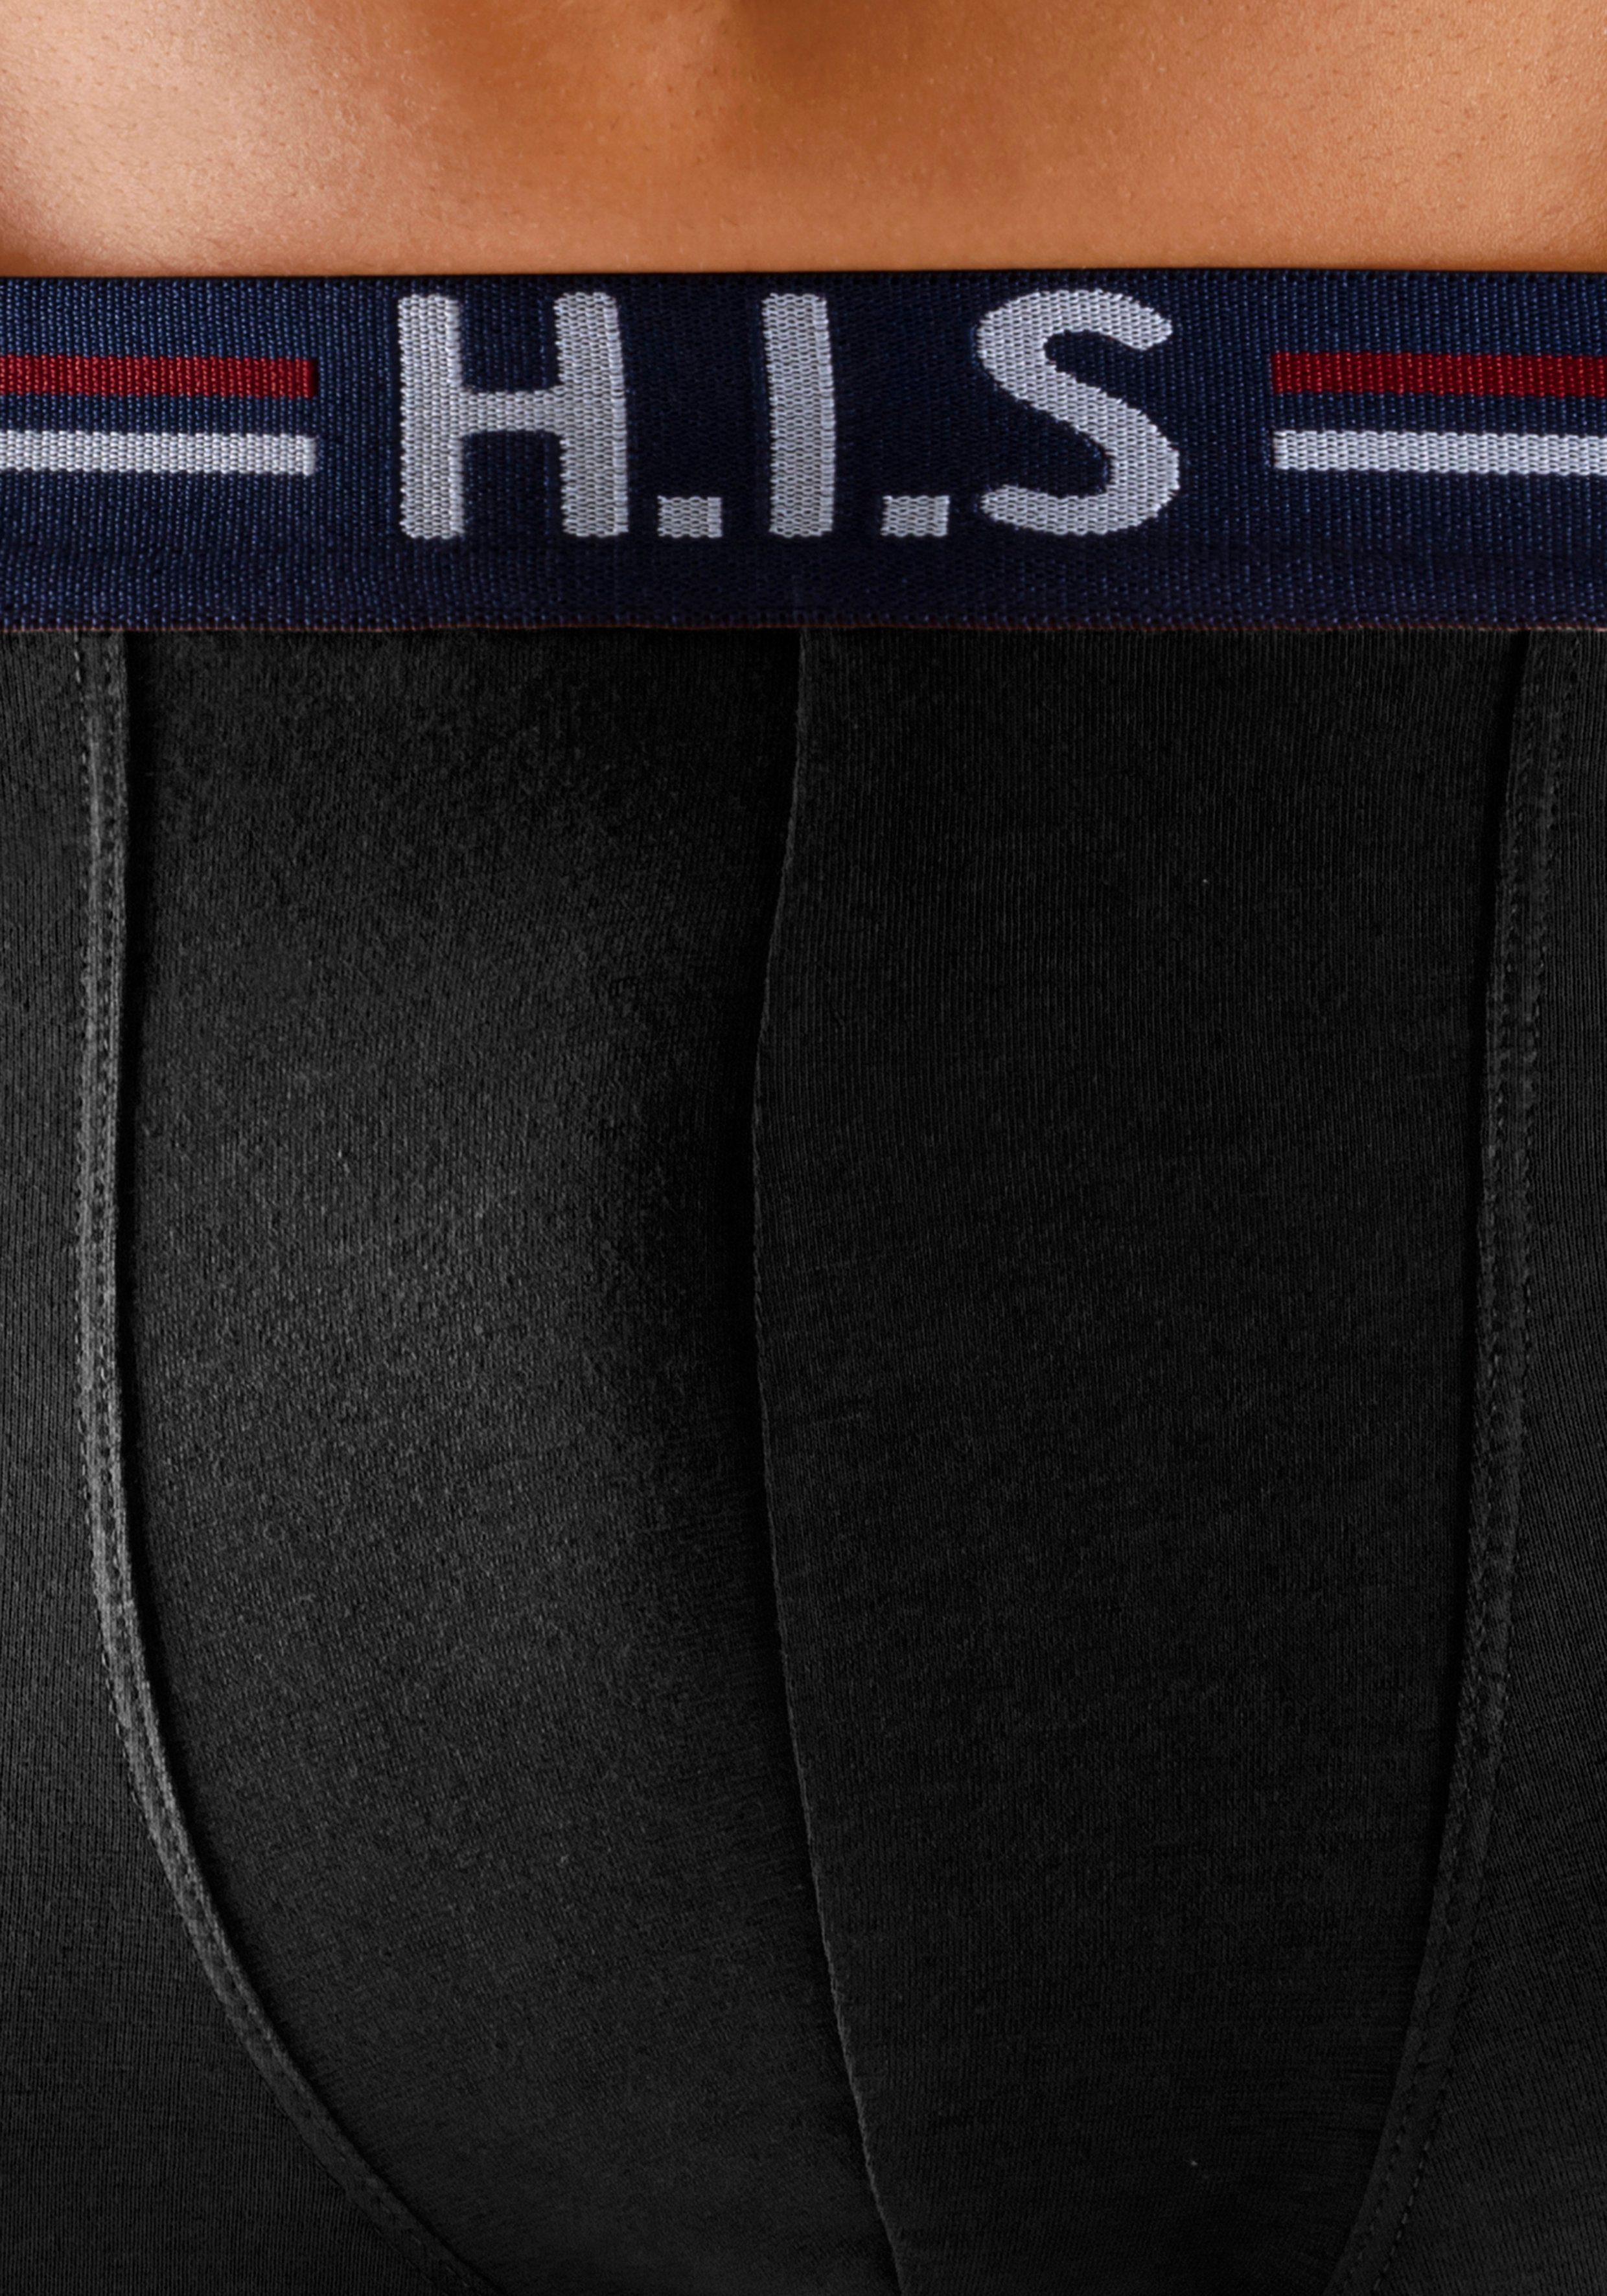 in H.I.S und Streifen Bund schwarz Hipster-Form im 5-St) mit (Packung, Markenlogo Boxershorts